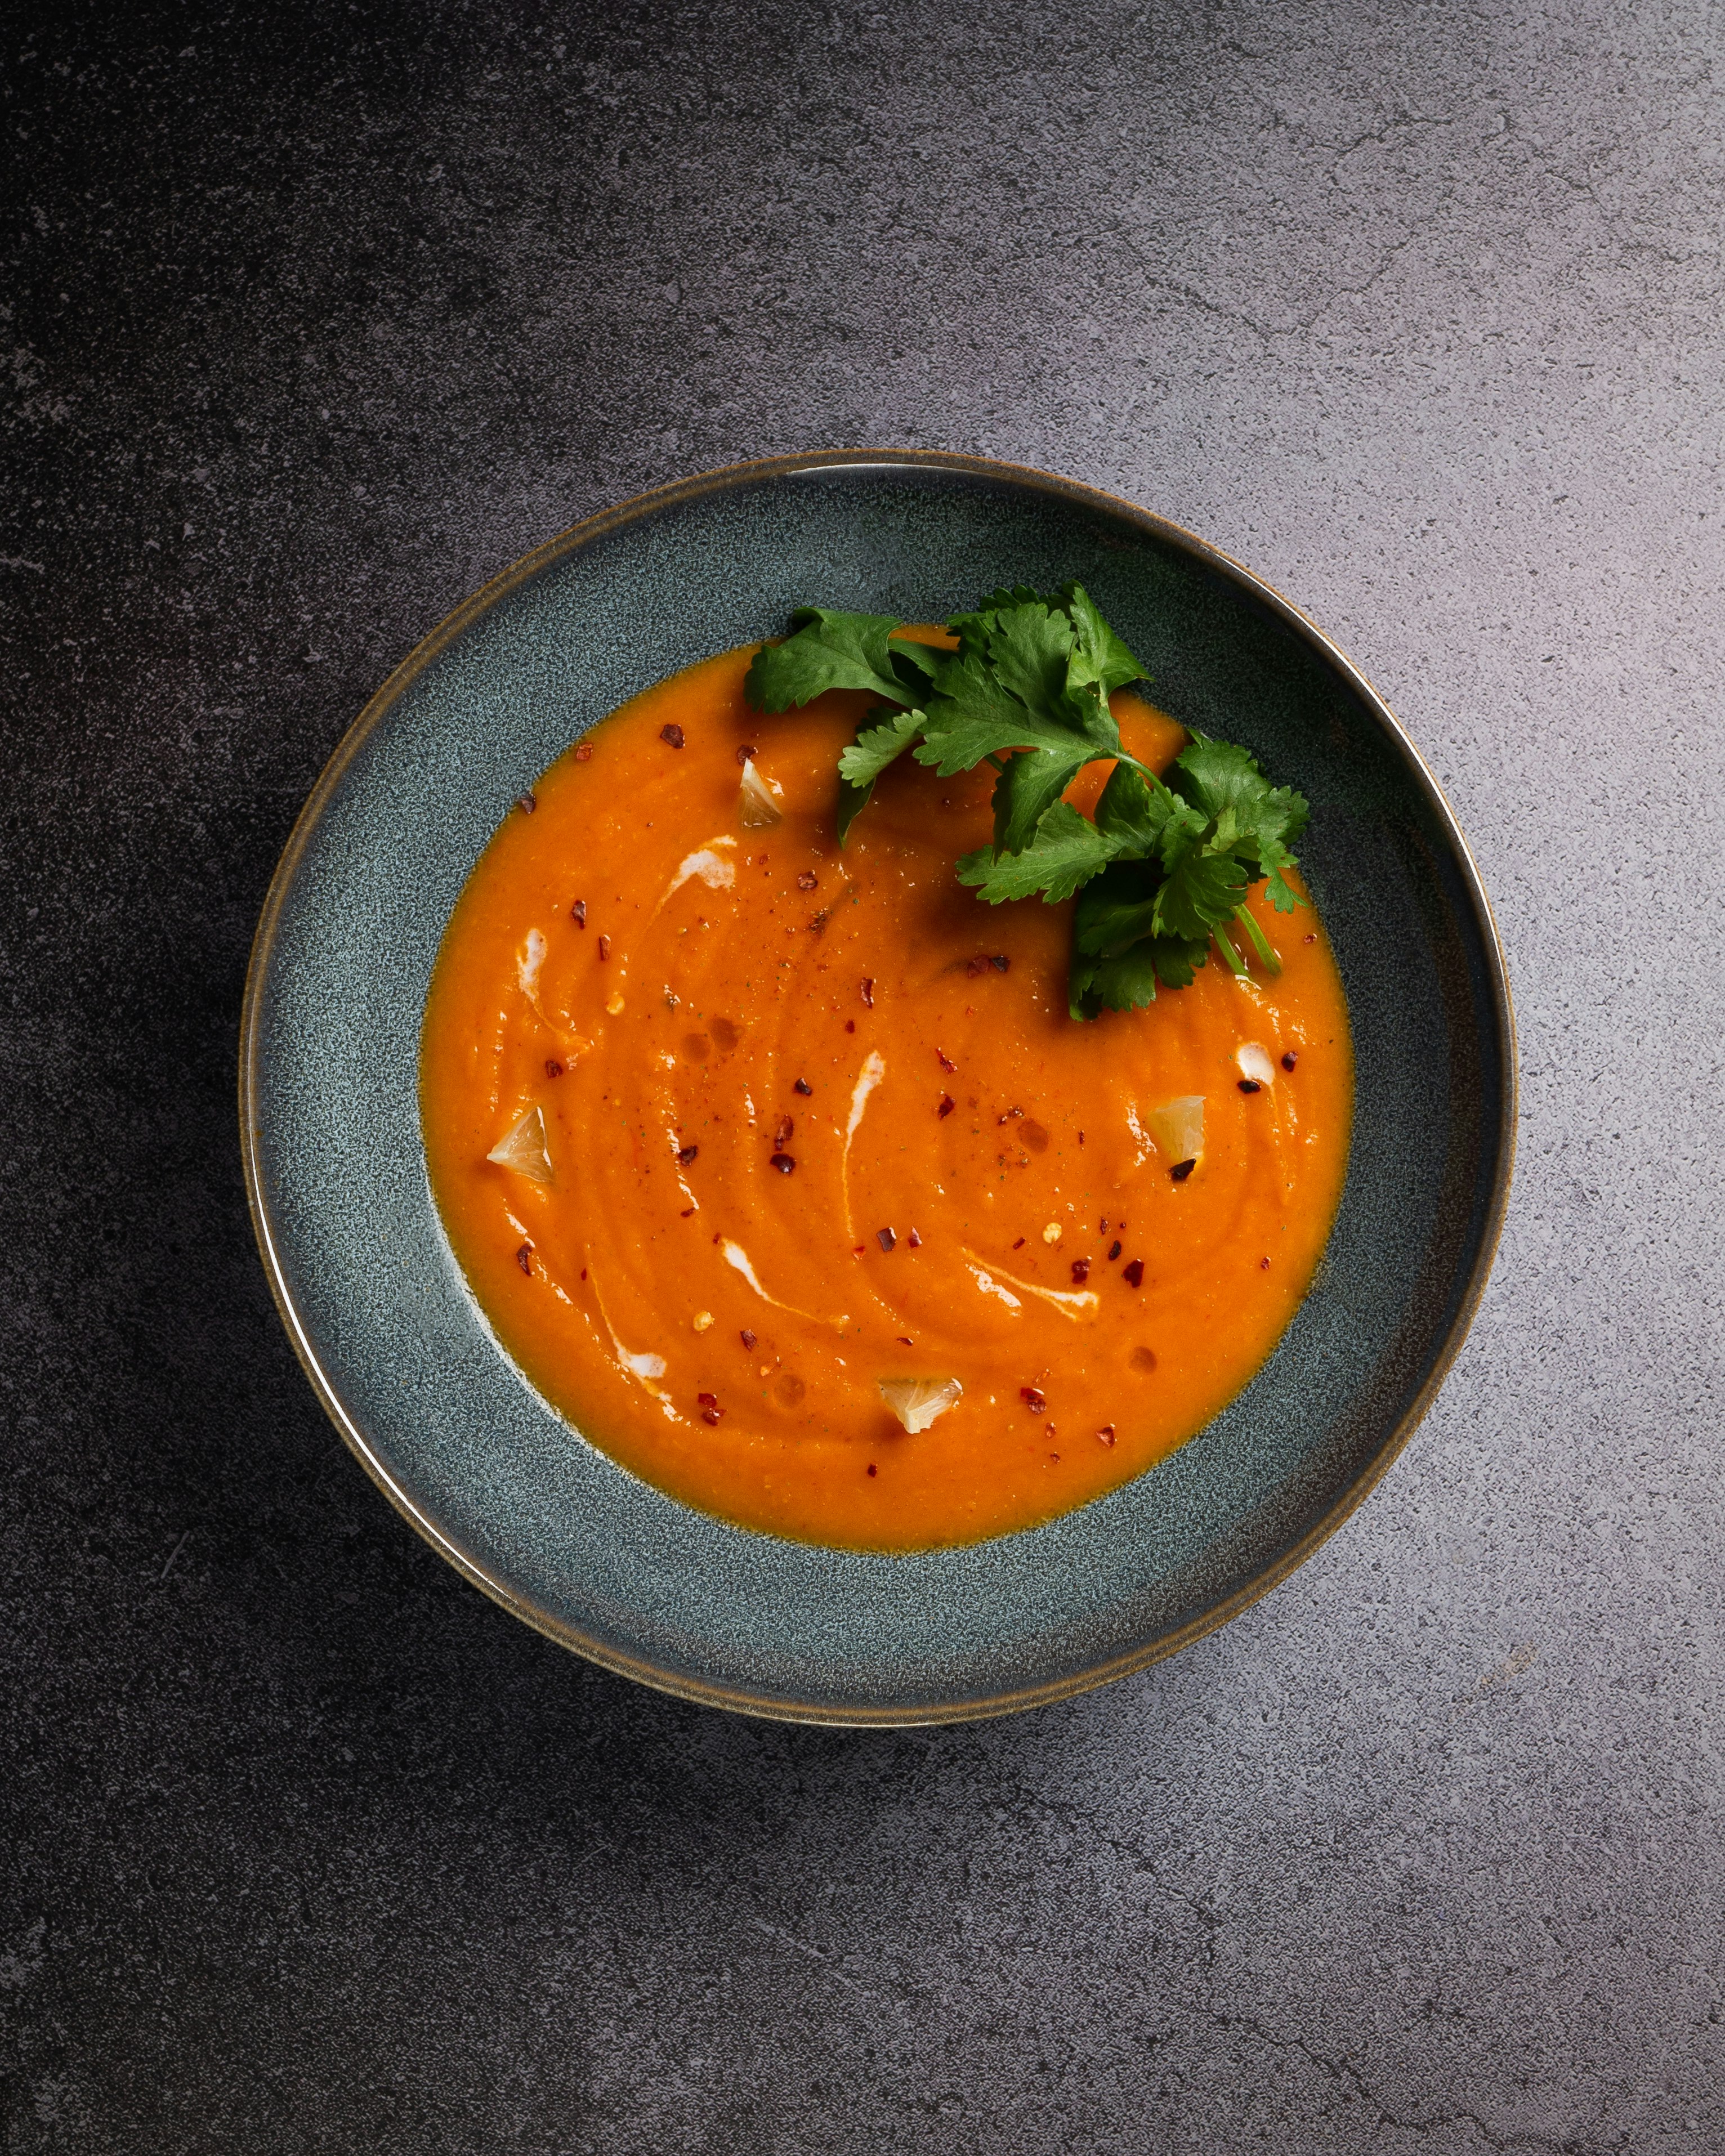 orange soup in black ceramic bowl